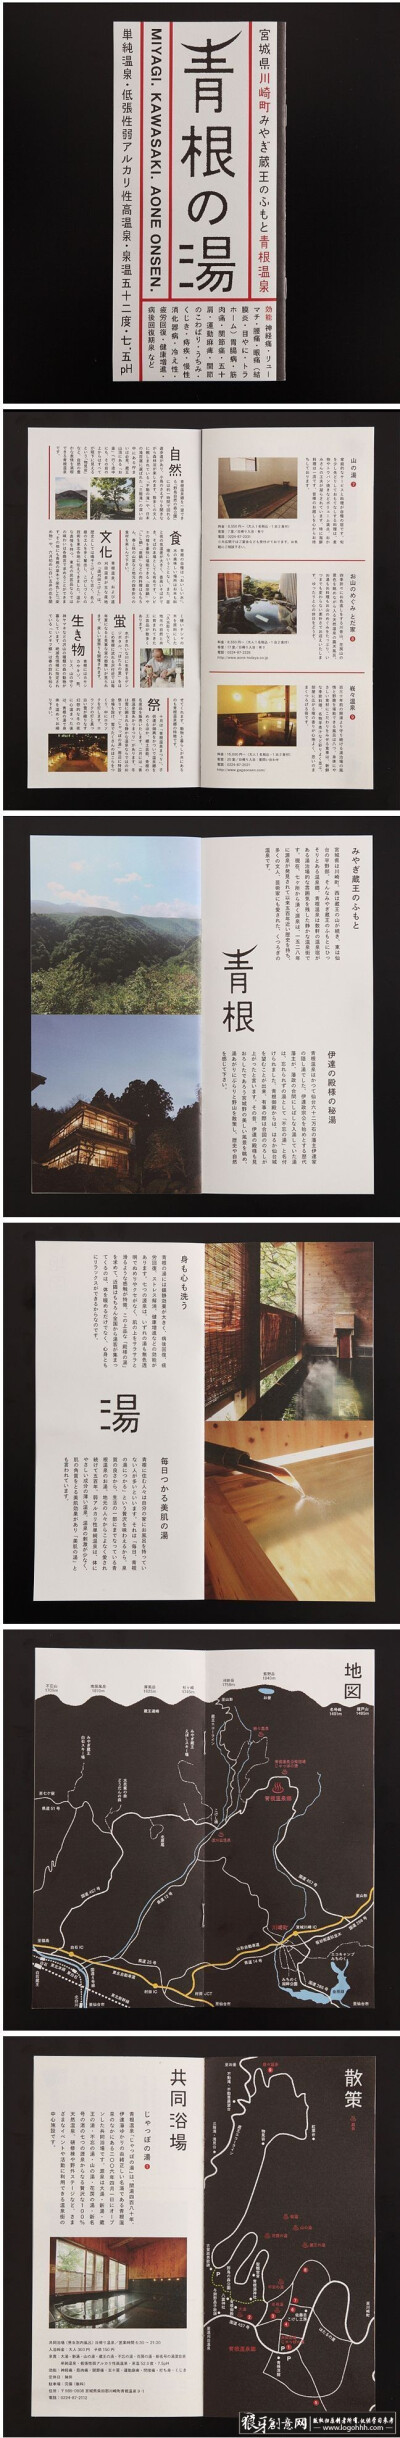 创意画册 日式画册设计 日本画册设计 创意画册内页设计 经典日式画册